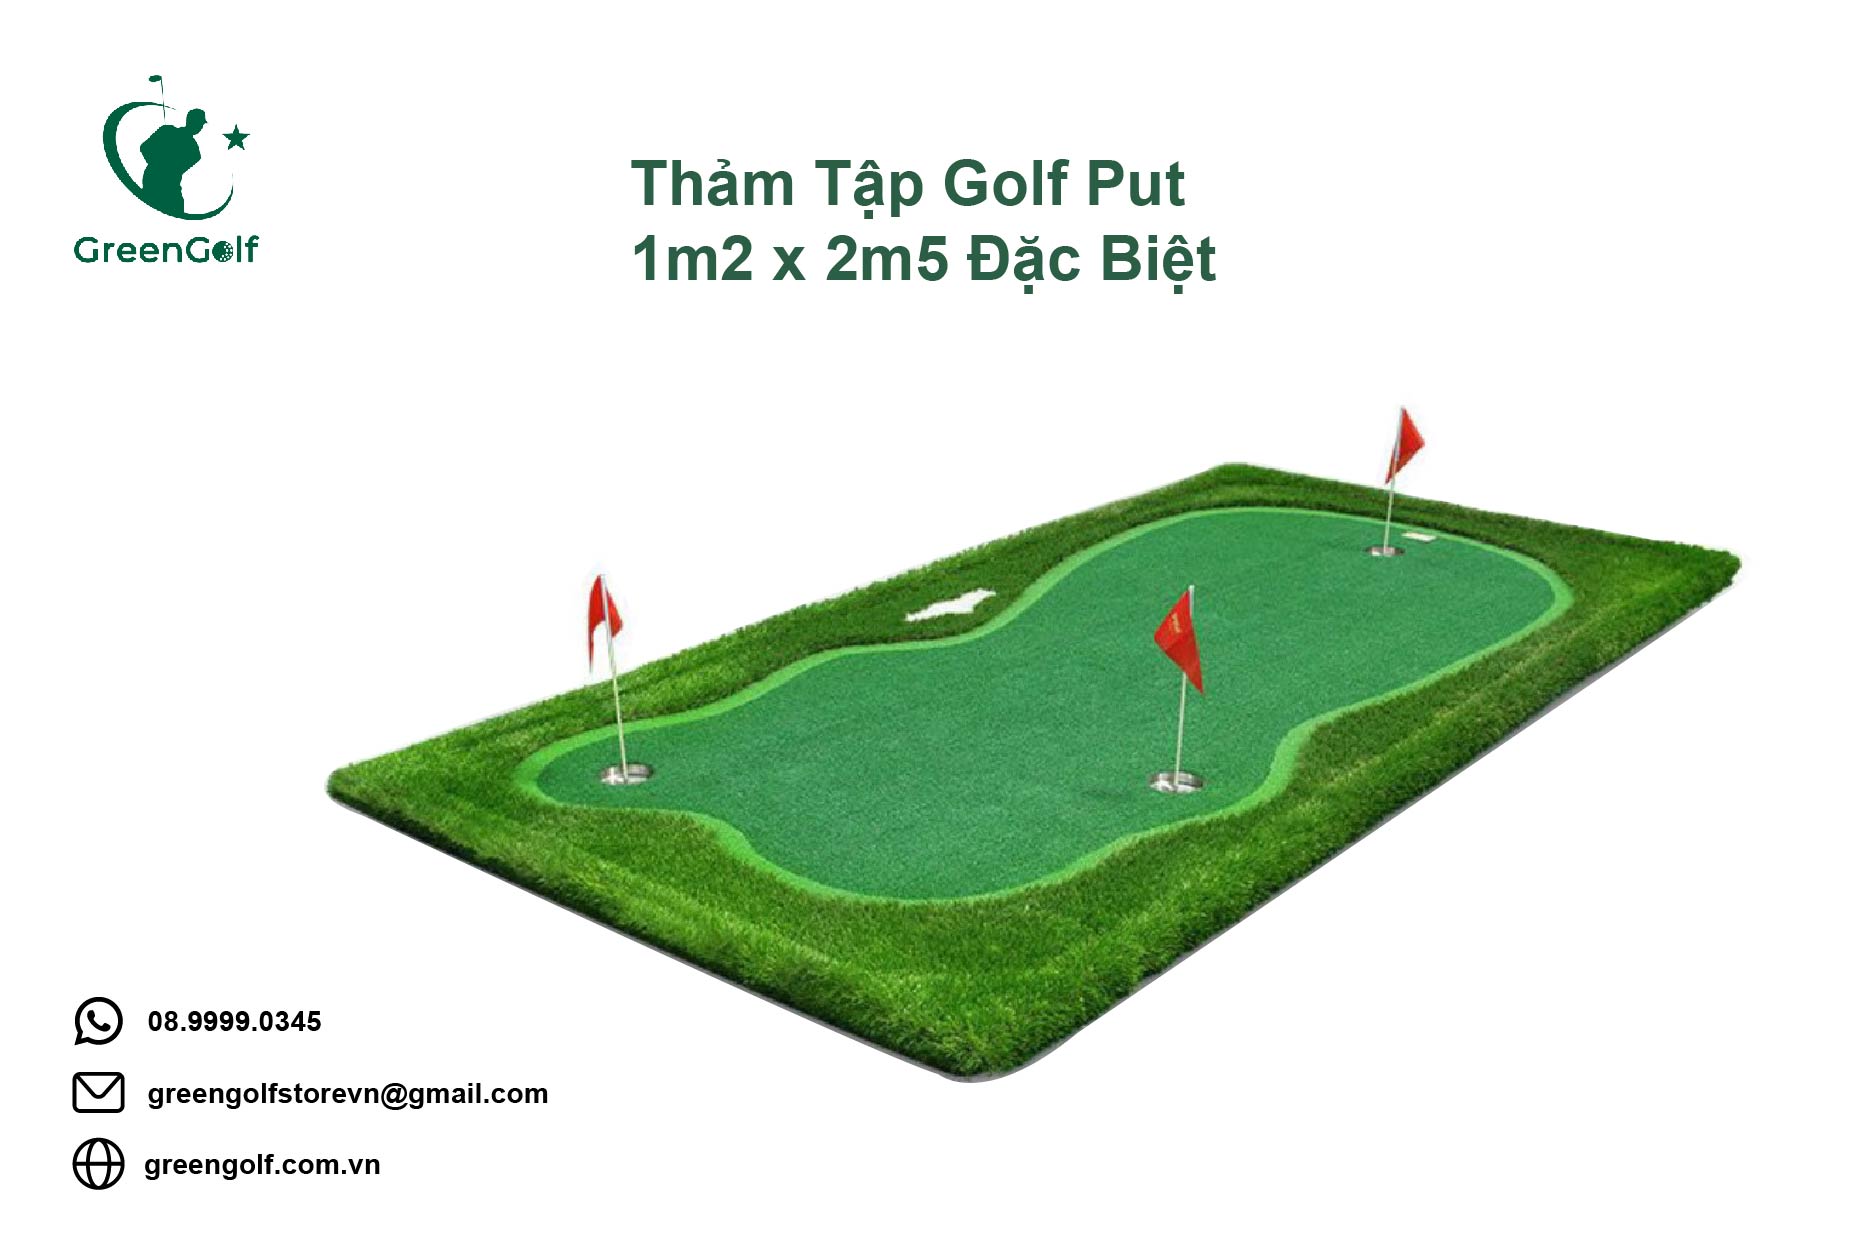 Thảm tập golf: Với thiết kế giống sân golf thật, thảm tập golf sẽ giúp bạn rèn luyện kĩ năng đánh golf tại nhà một cách dễ dàng và hiệu quả. Hãy chuẩn bị cho mình những giải pháp tập luyện đỉnh cao cùng thảm tập golf.